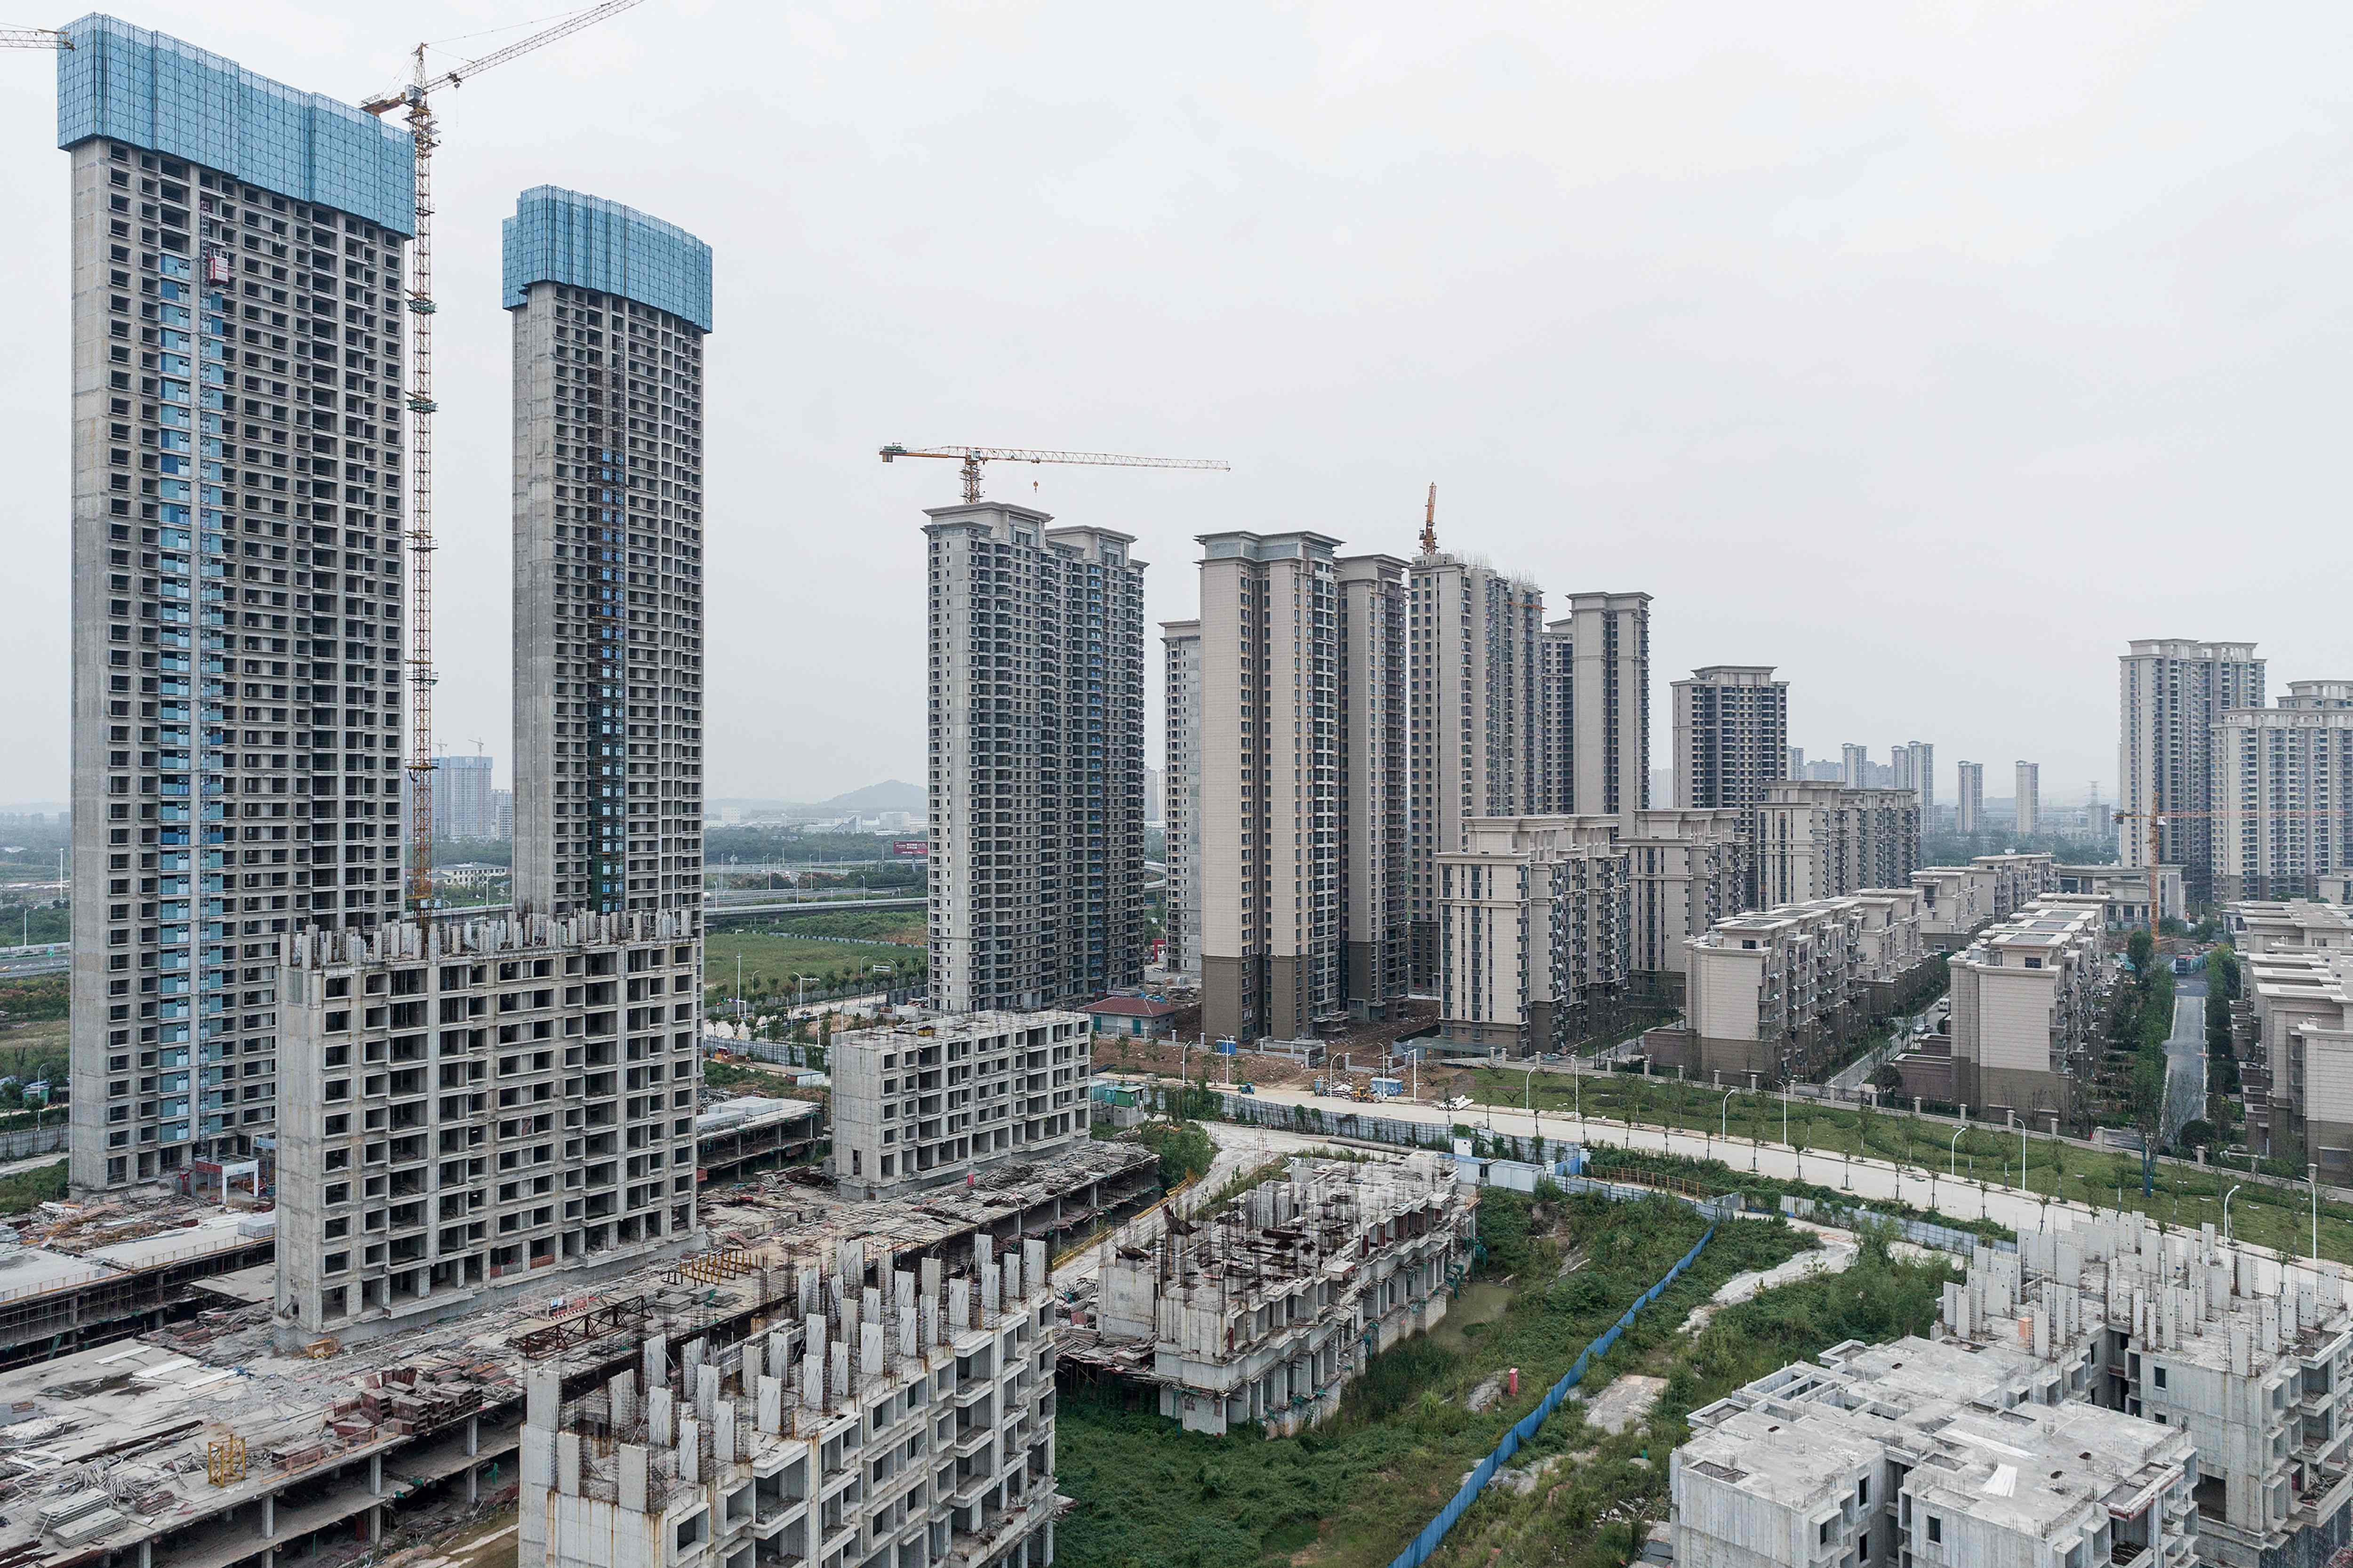 Un complejo de viviendas en construcción por el promotor inmobiliario chino Evergrande se ve en Wuhan, en la provincia central china de Hubei. Fotografía: